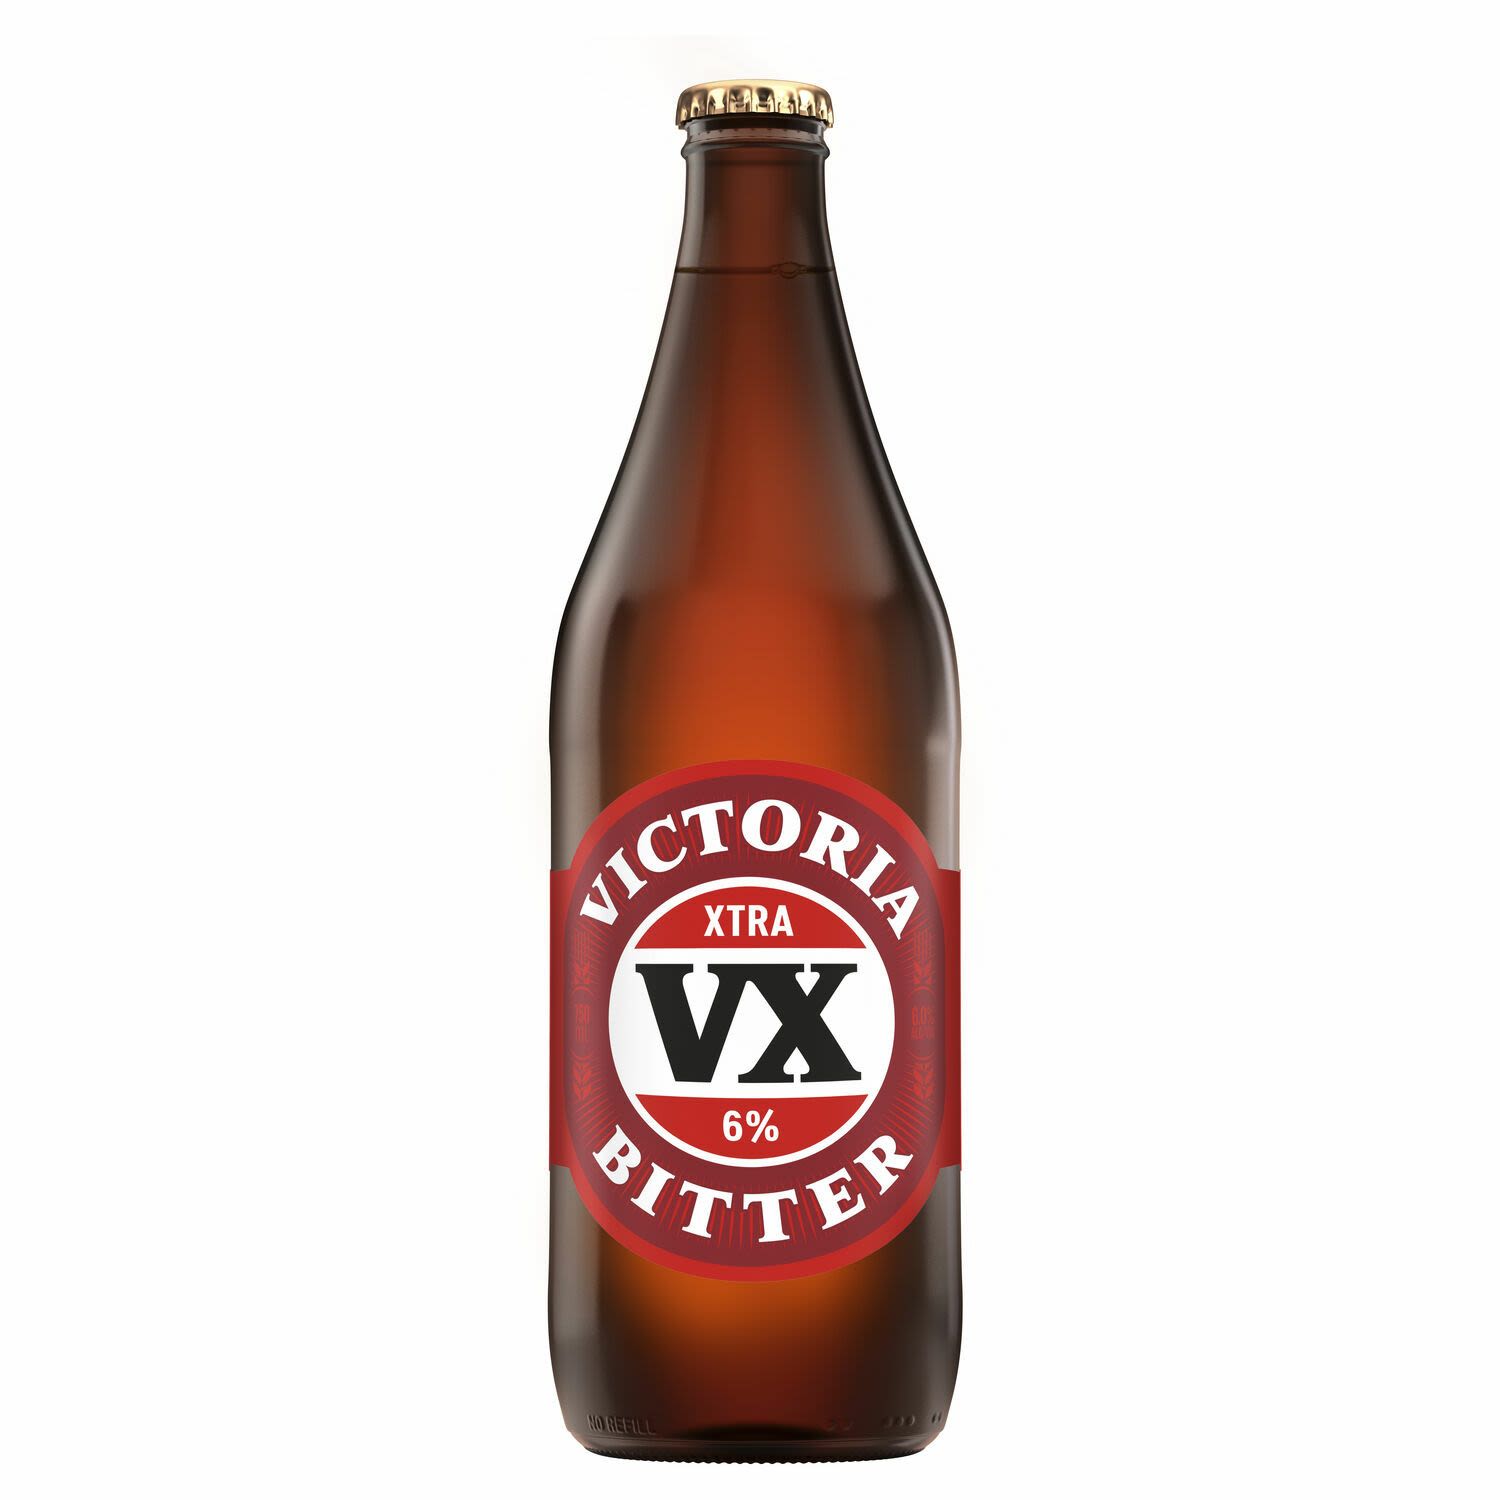 VB XTRA Bottle 750mL